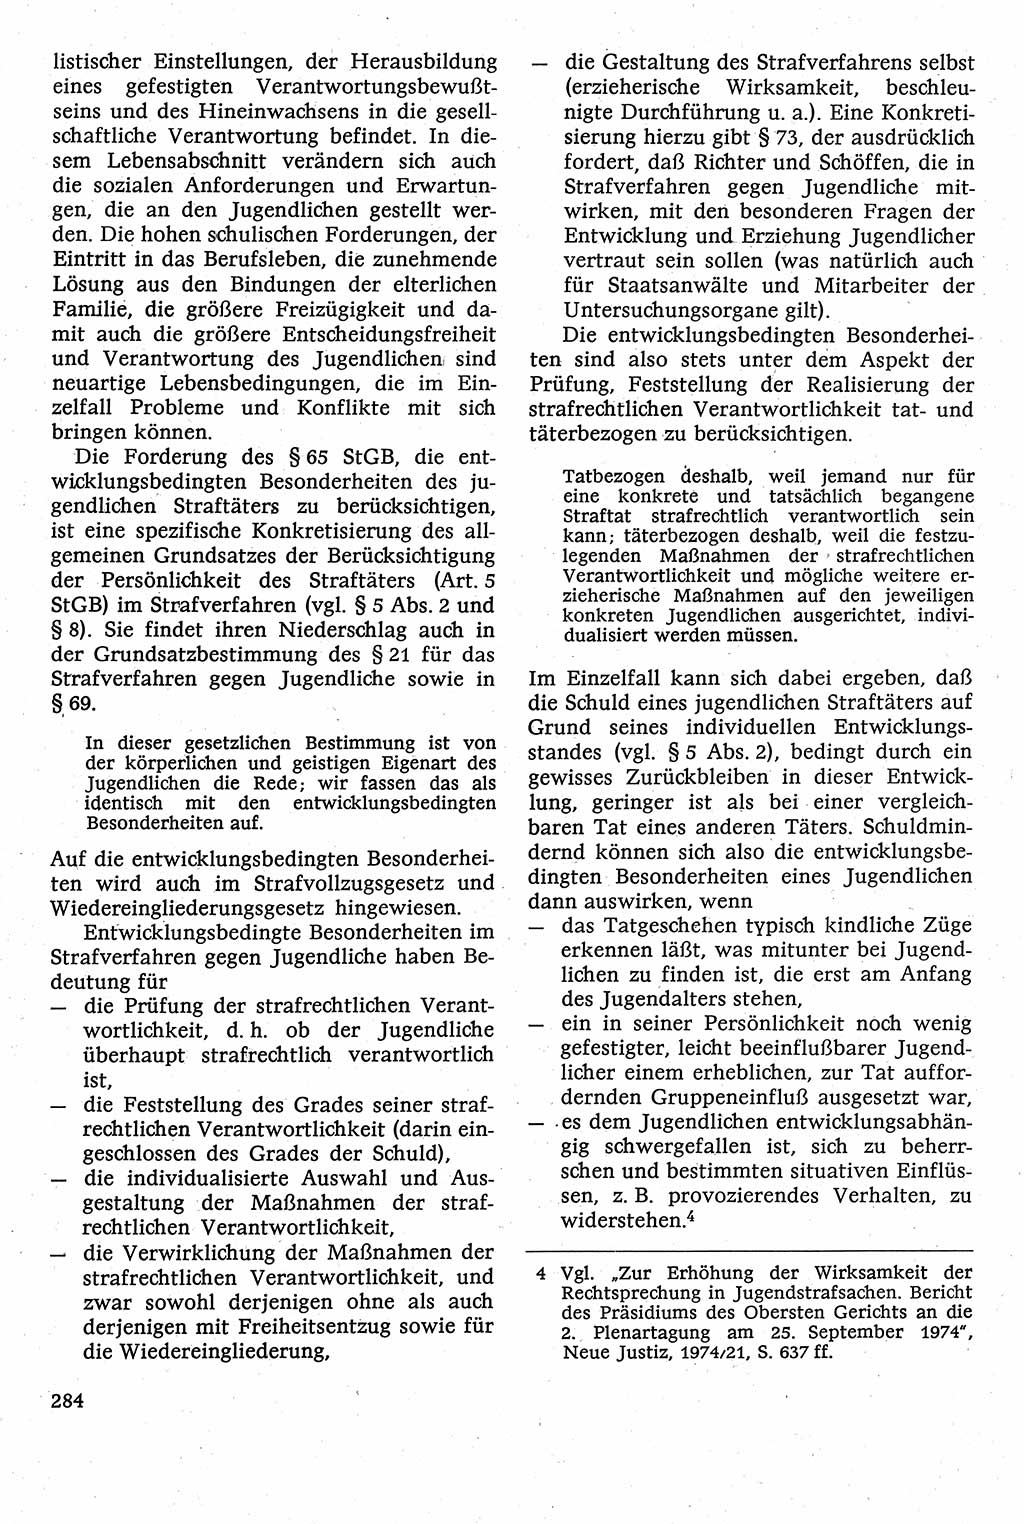 Strafverfahrensrecht [Deutsche Demokratische Republik (DDR)], Lehrbuch 1982, Seite 284 (Strafverf.-R. DDR Lb. 1982, S. 284)